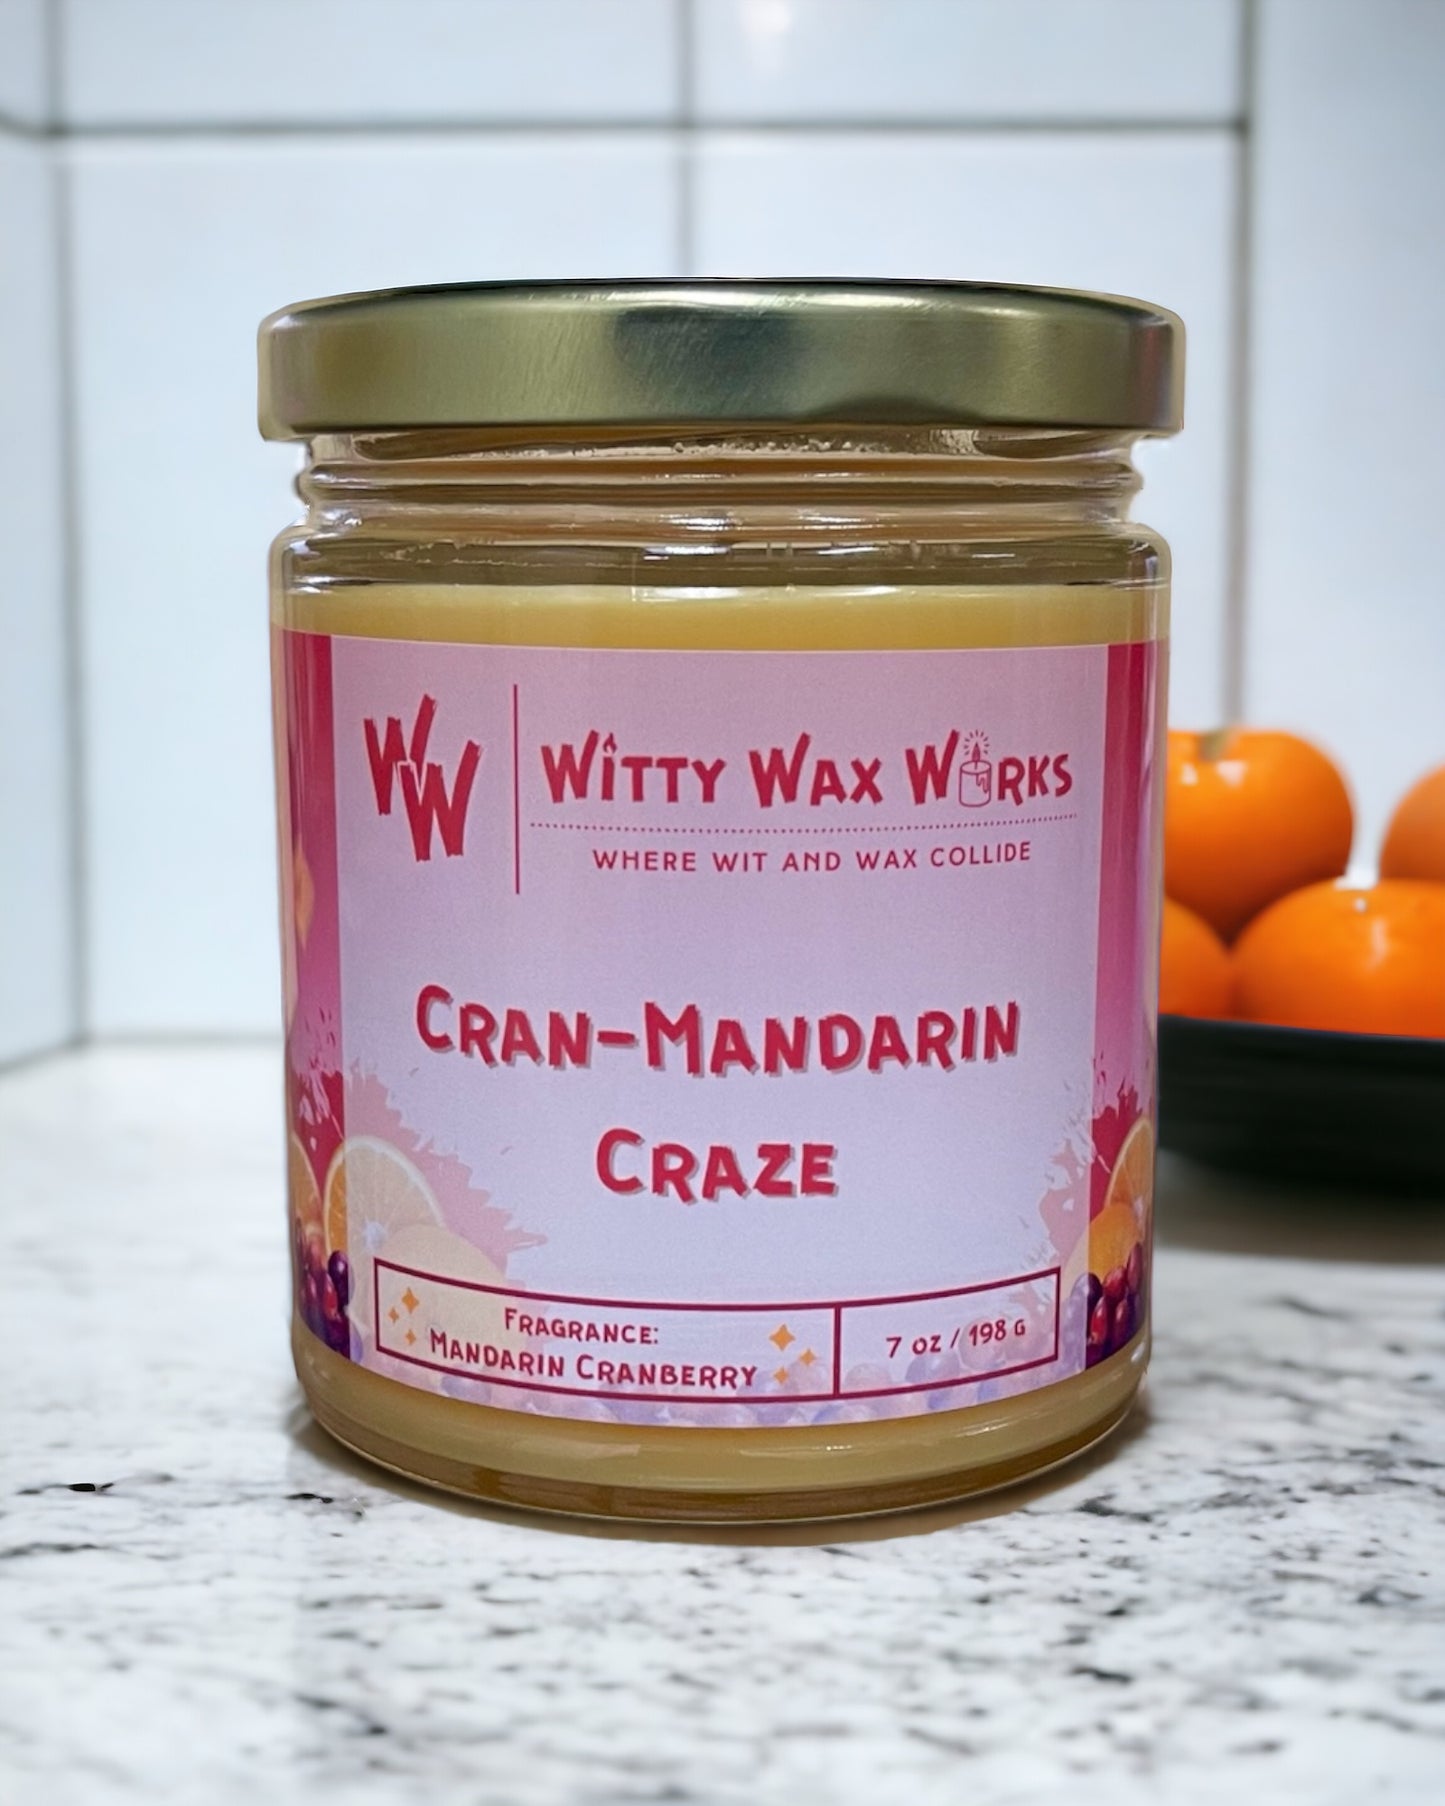 Cran-Mandarin Craze